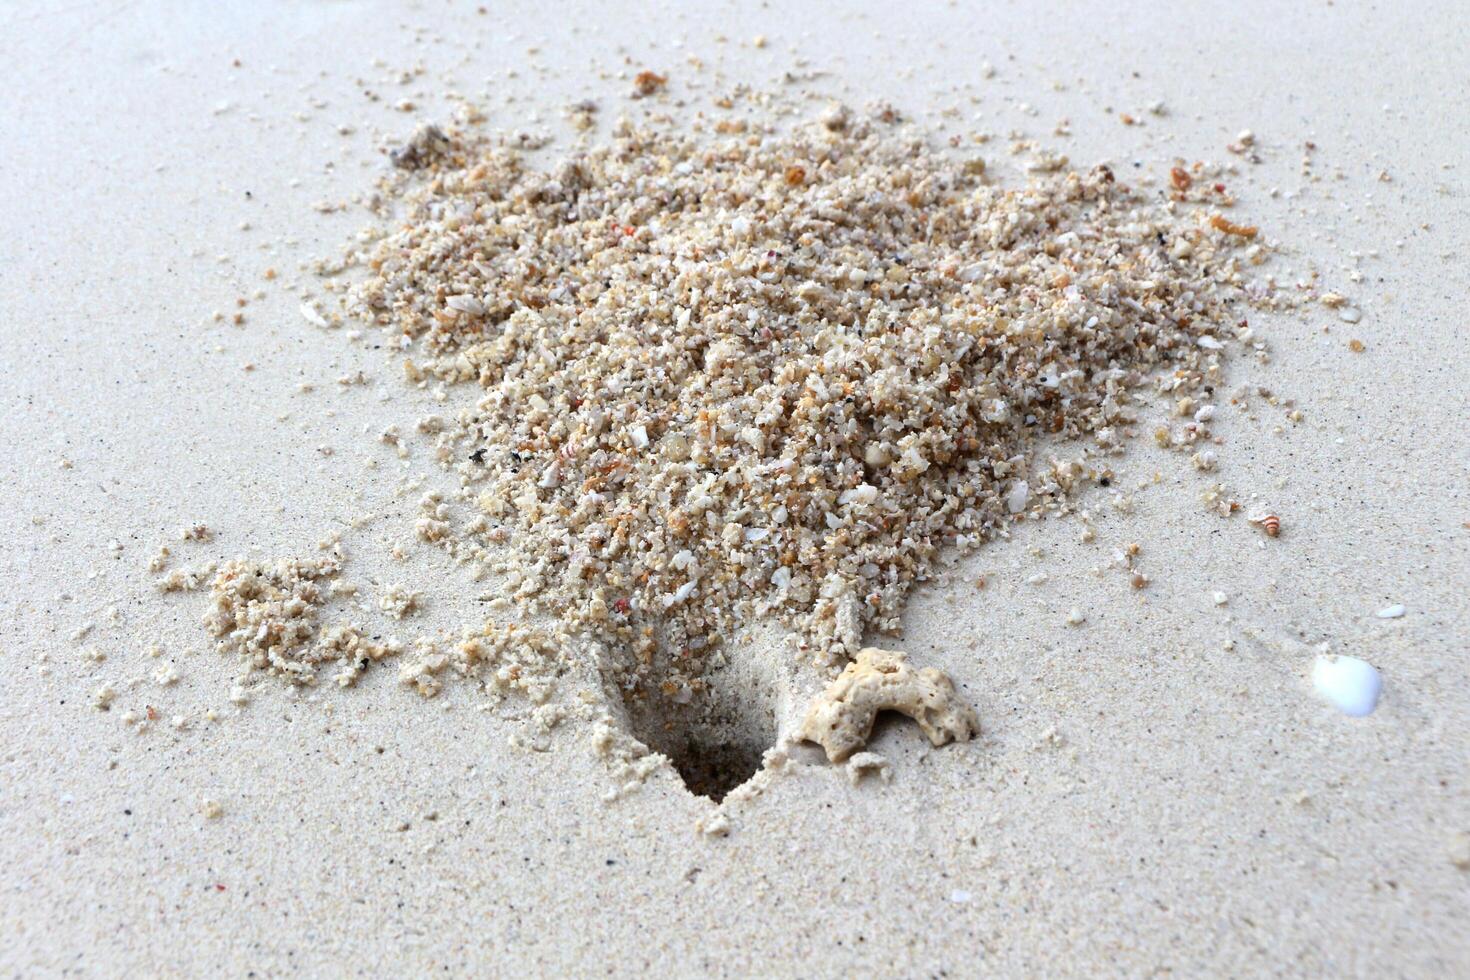 Crab hole on the beach sand. photo